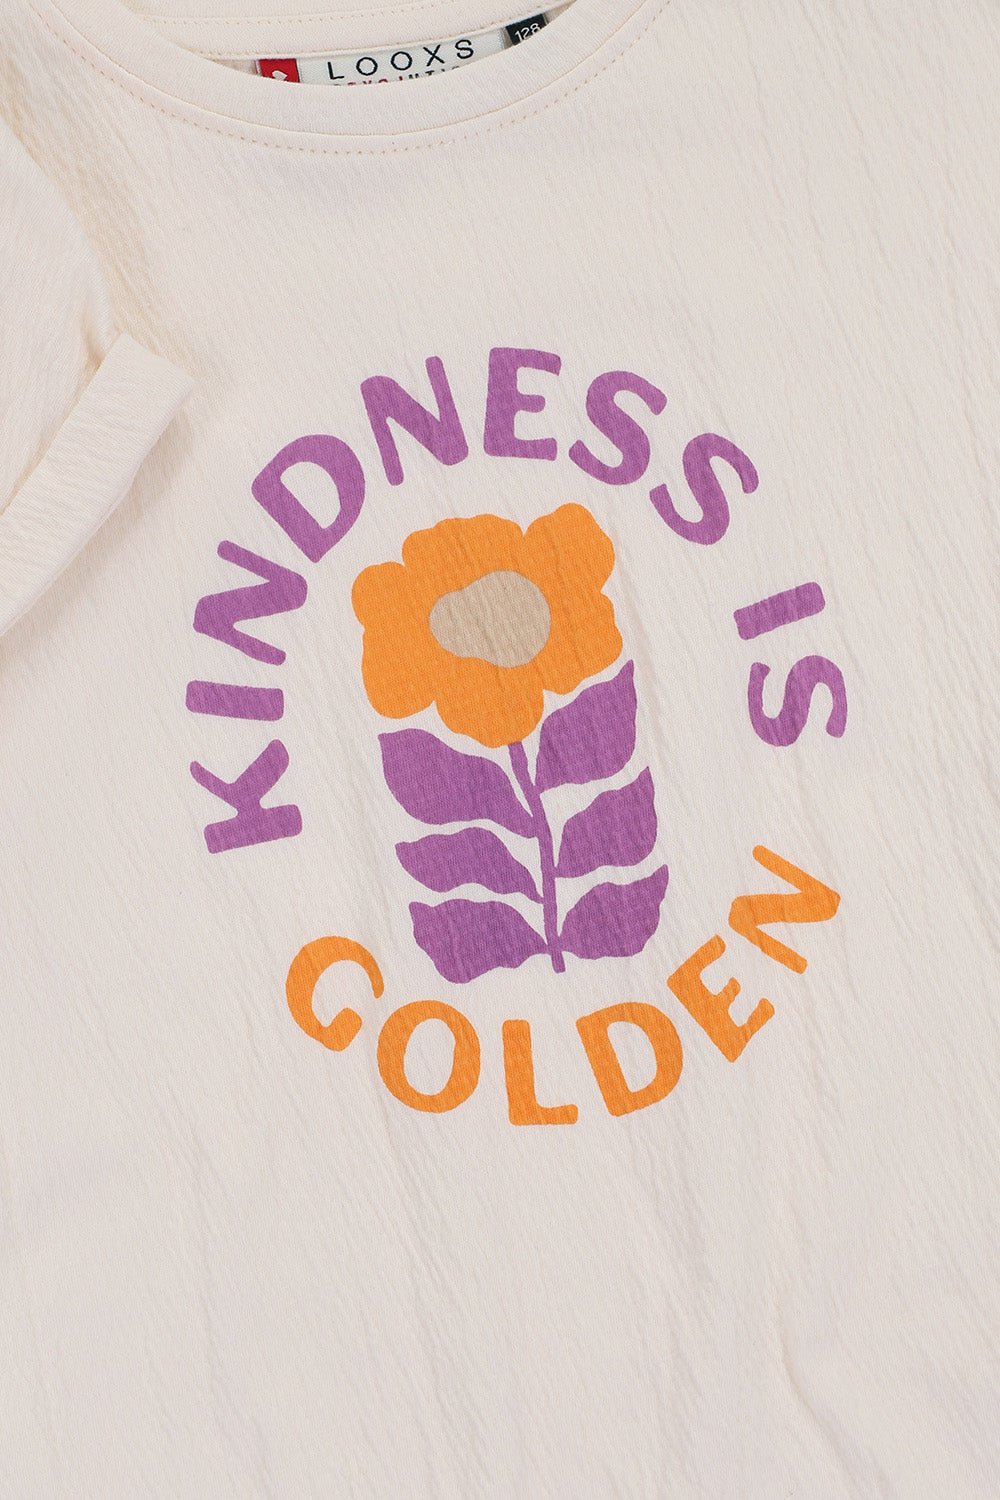 || LOOXS || T-shirt met print ‘kindness’